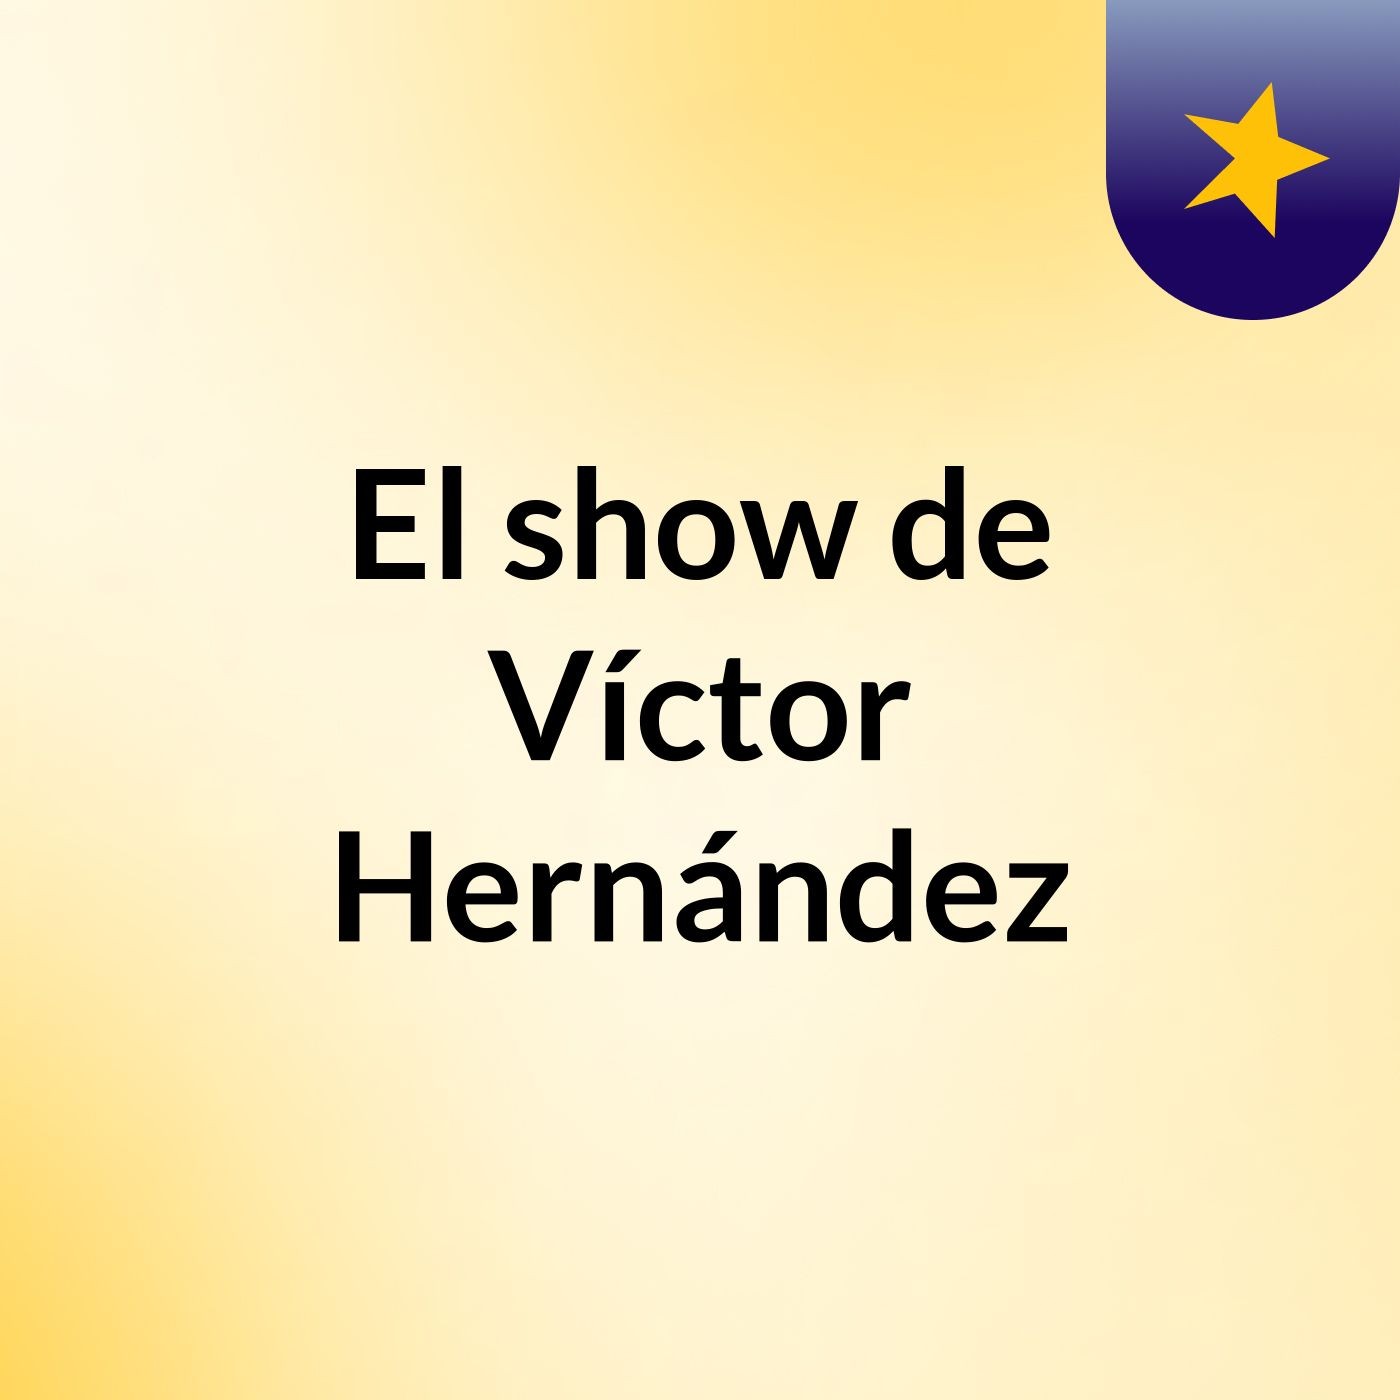 El show de Víctor Hernández